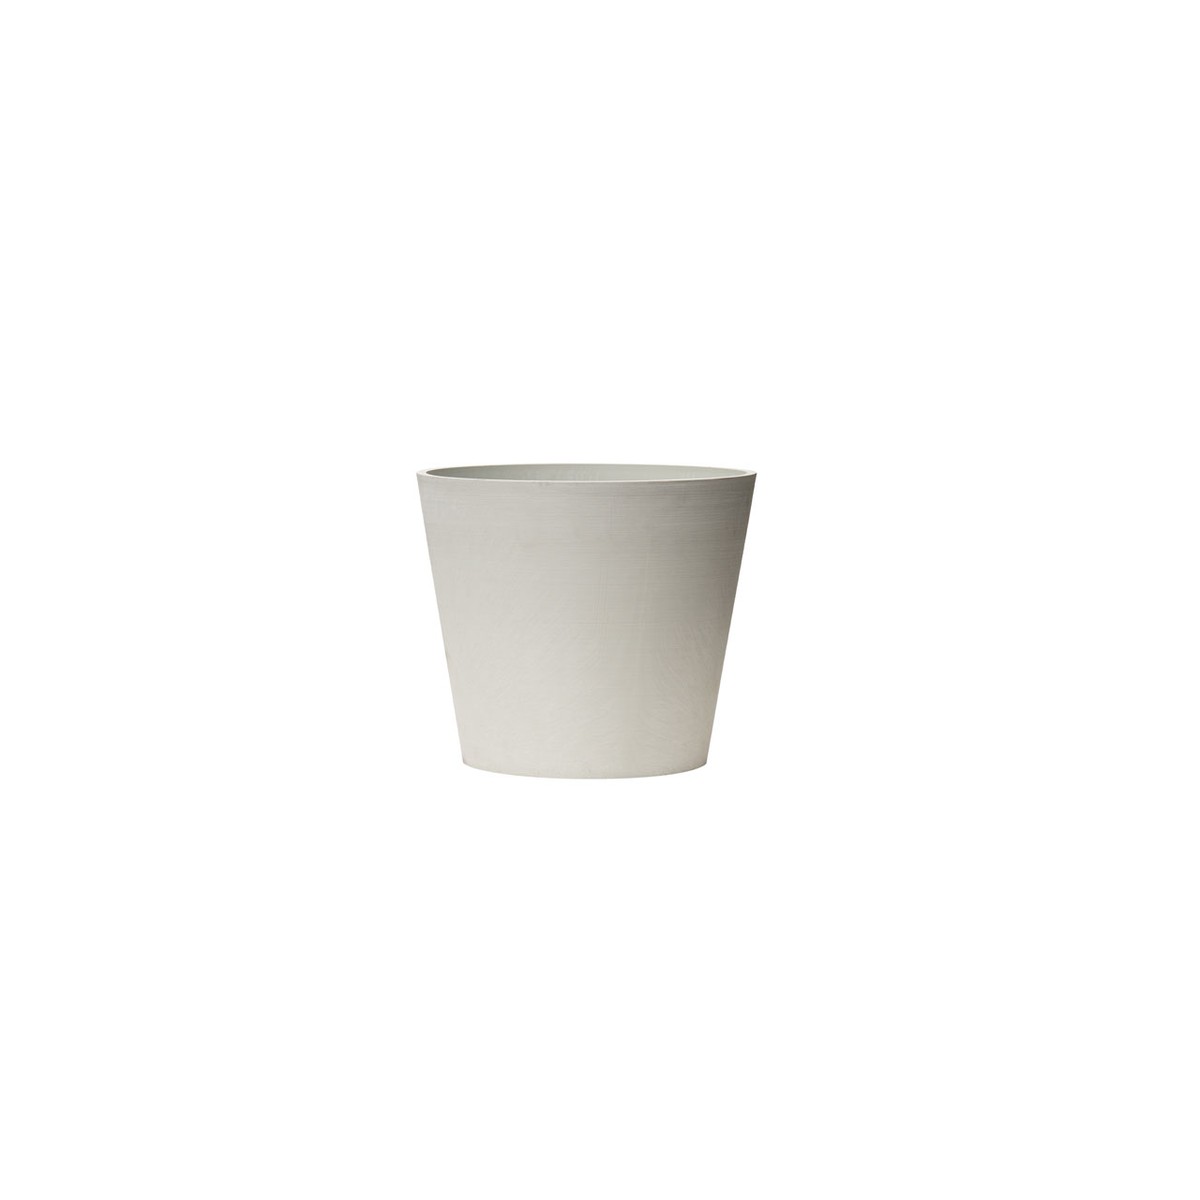  NOVA VITA Pot à cône tronqué 40 Artplast Blanc albâtre Ø385x336mm 26L